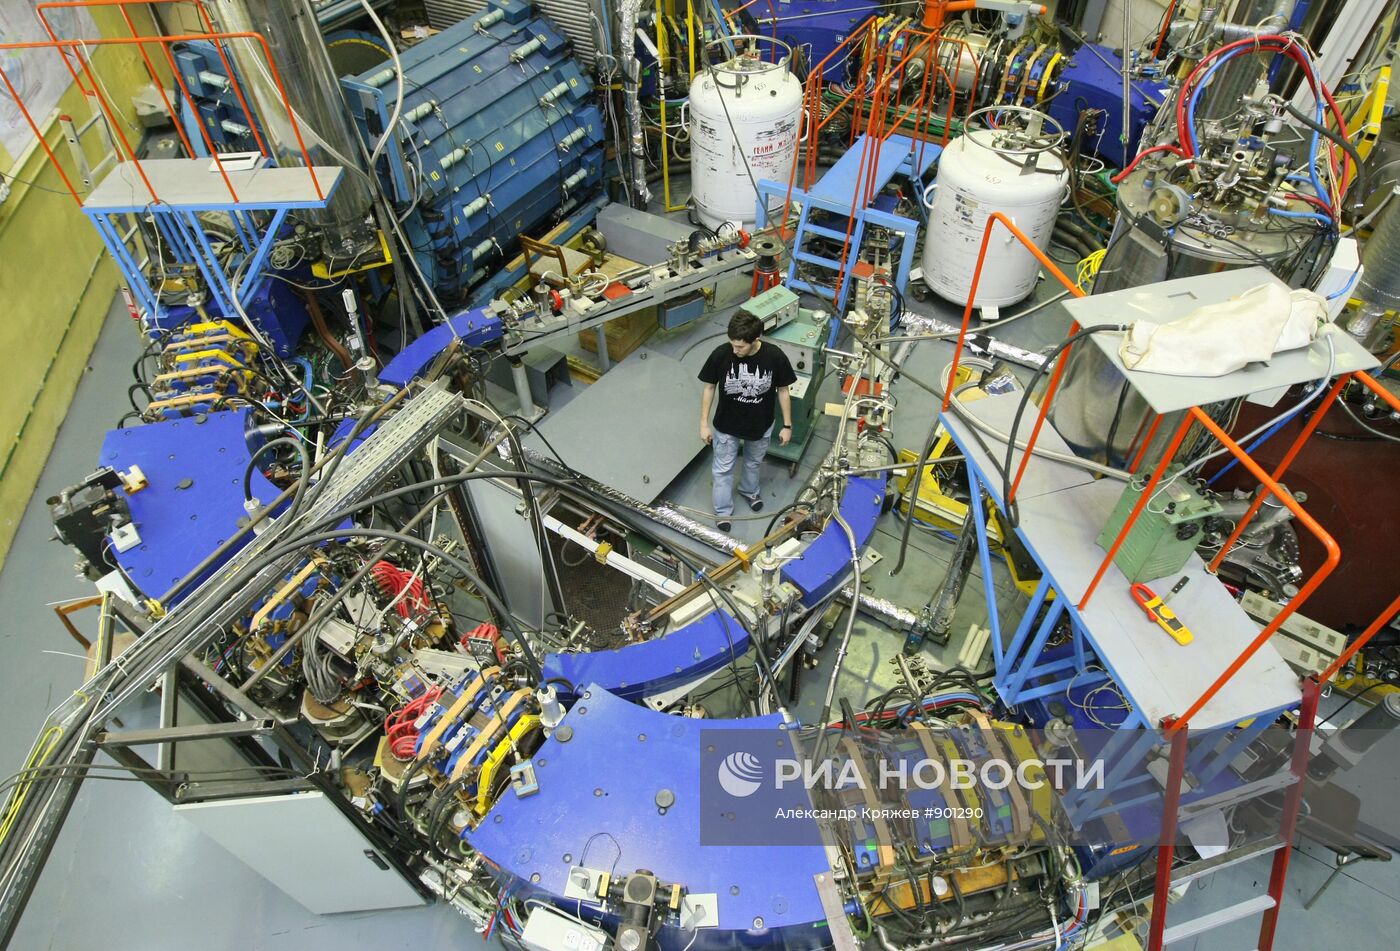 Институт Ядерной физики в Новосибирске